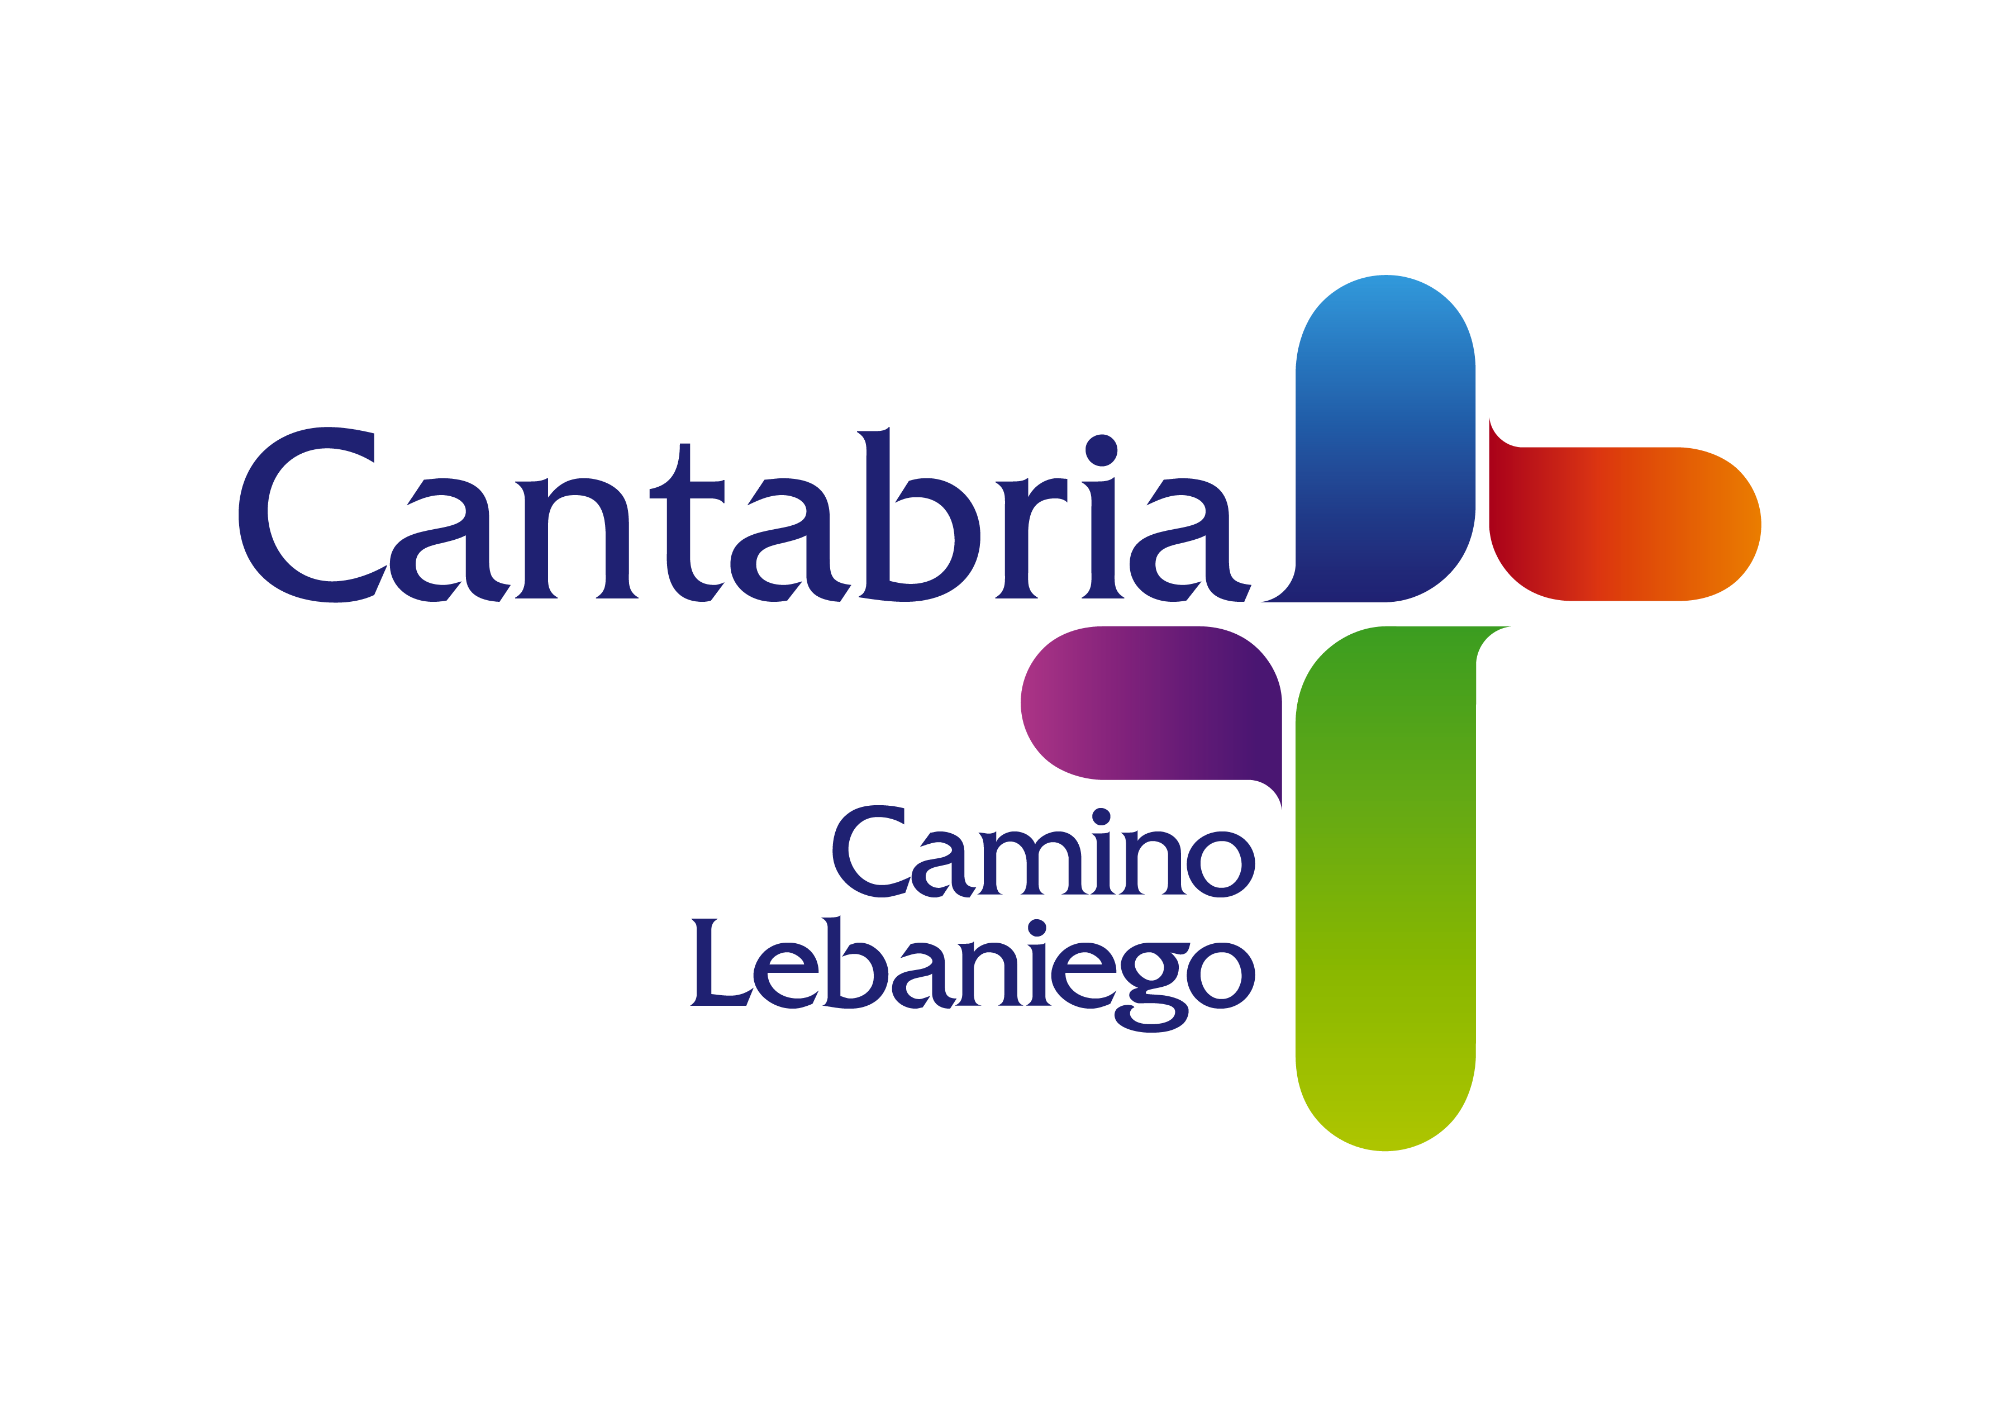 Cantabria - Camino Lebaniego - convocatoria de empleo